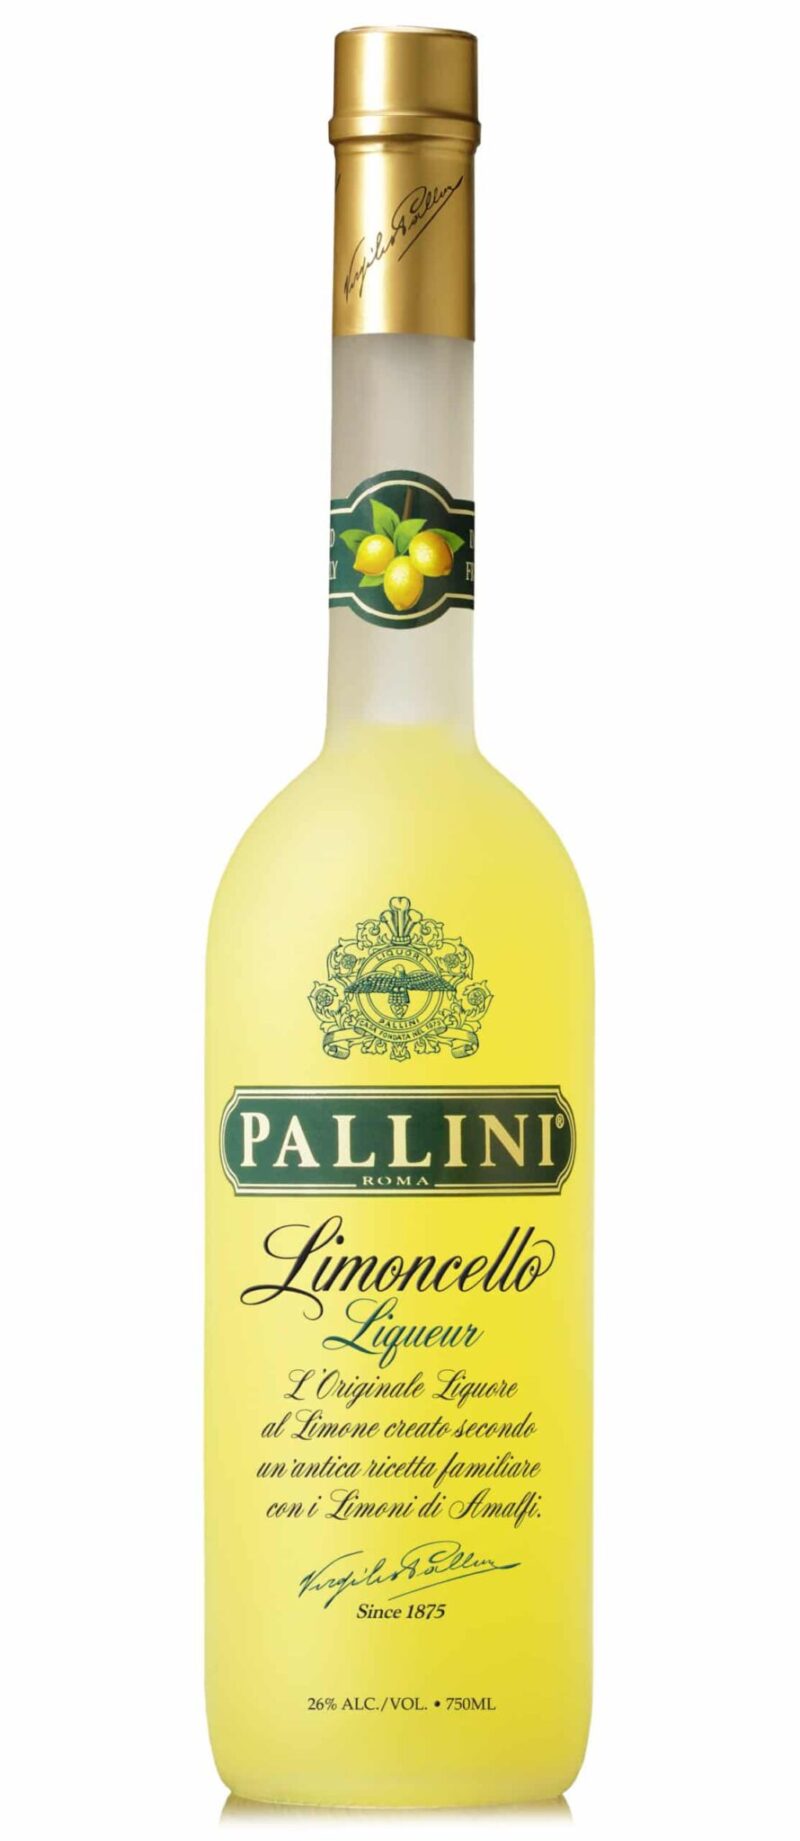 Pallini Limoncello 700ml